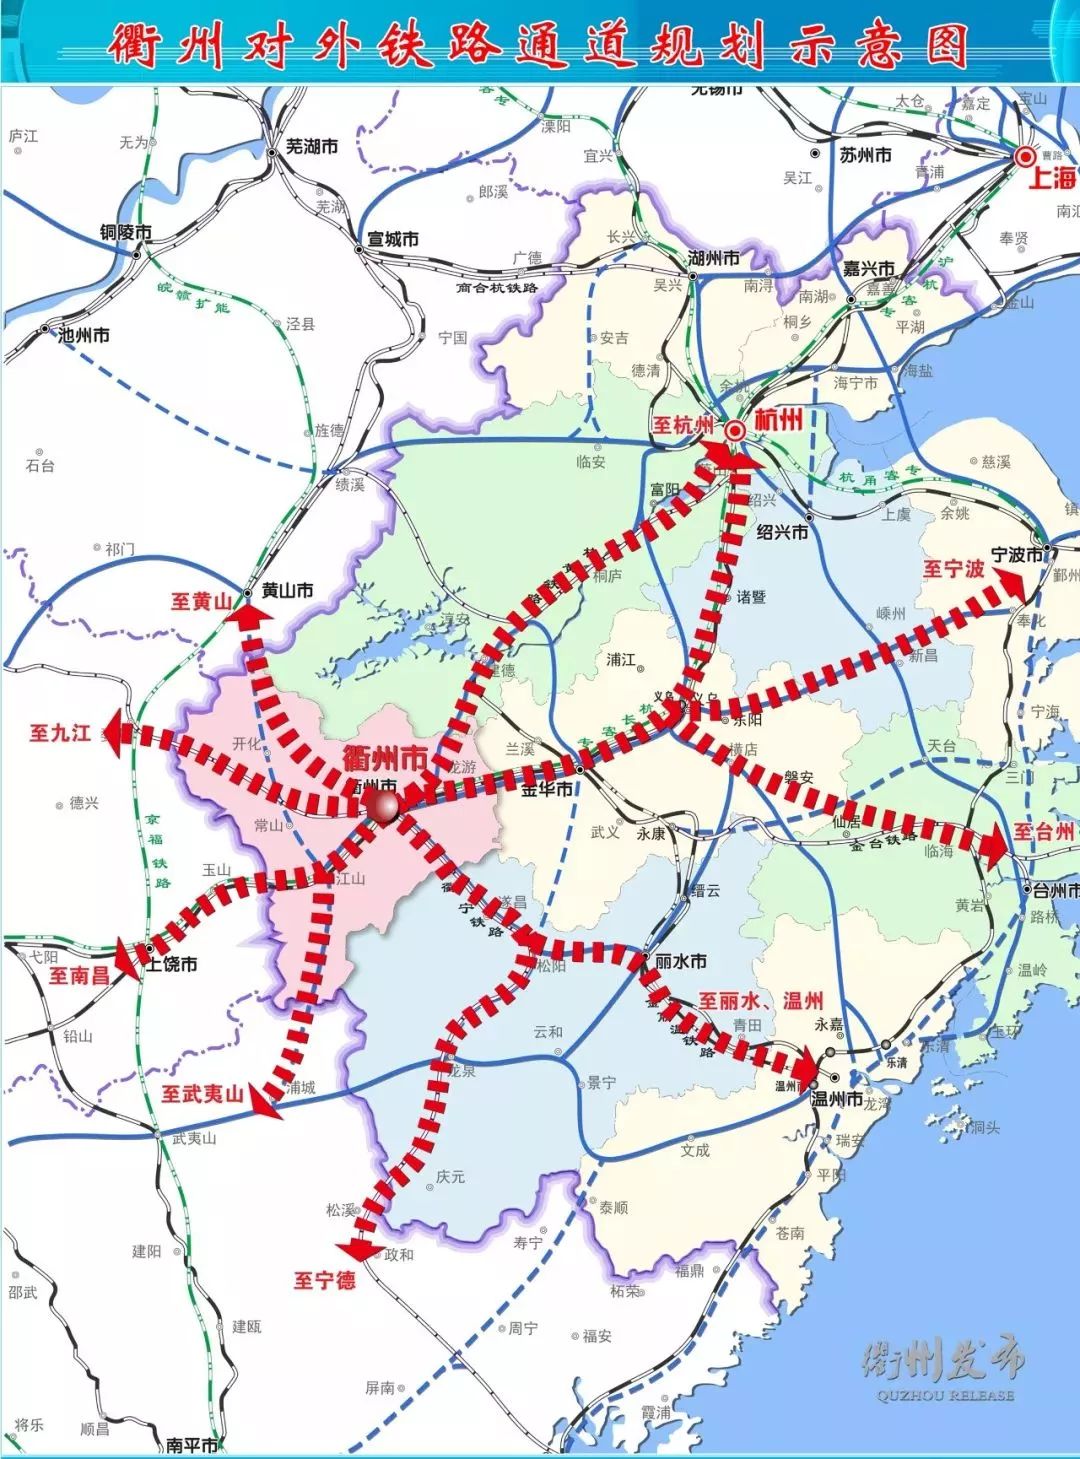 衢铁路,将新建杭州至衢州铁路(建德至衢州段),设计时速350公里,线路正